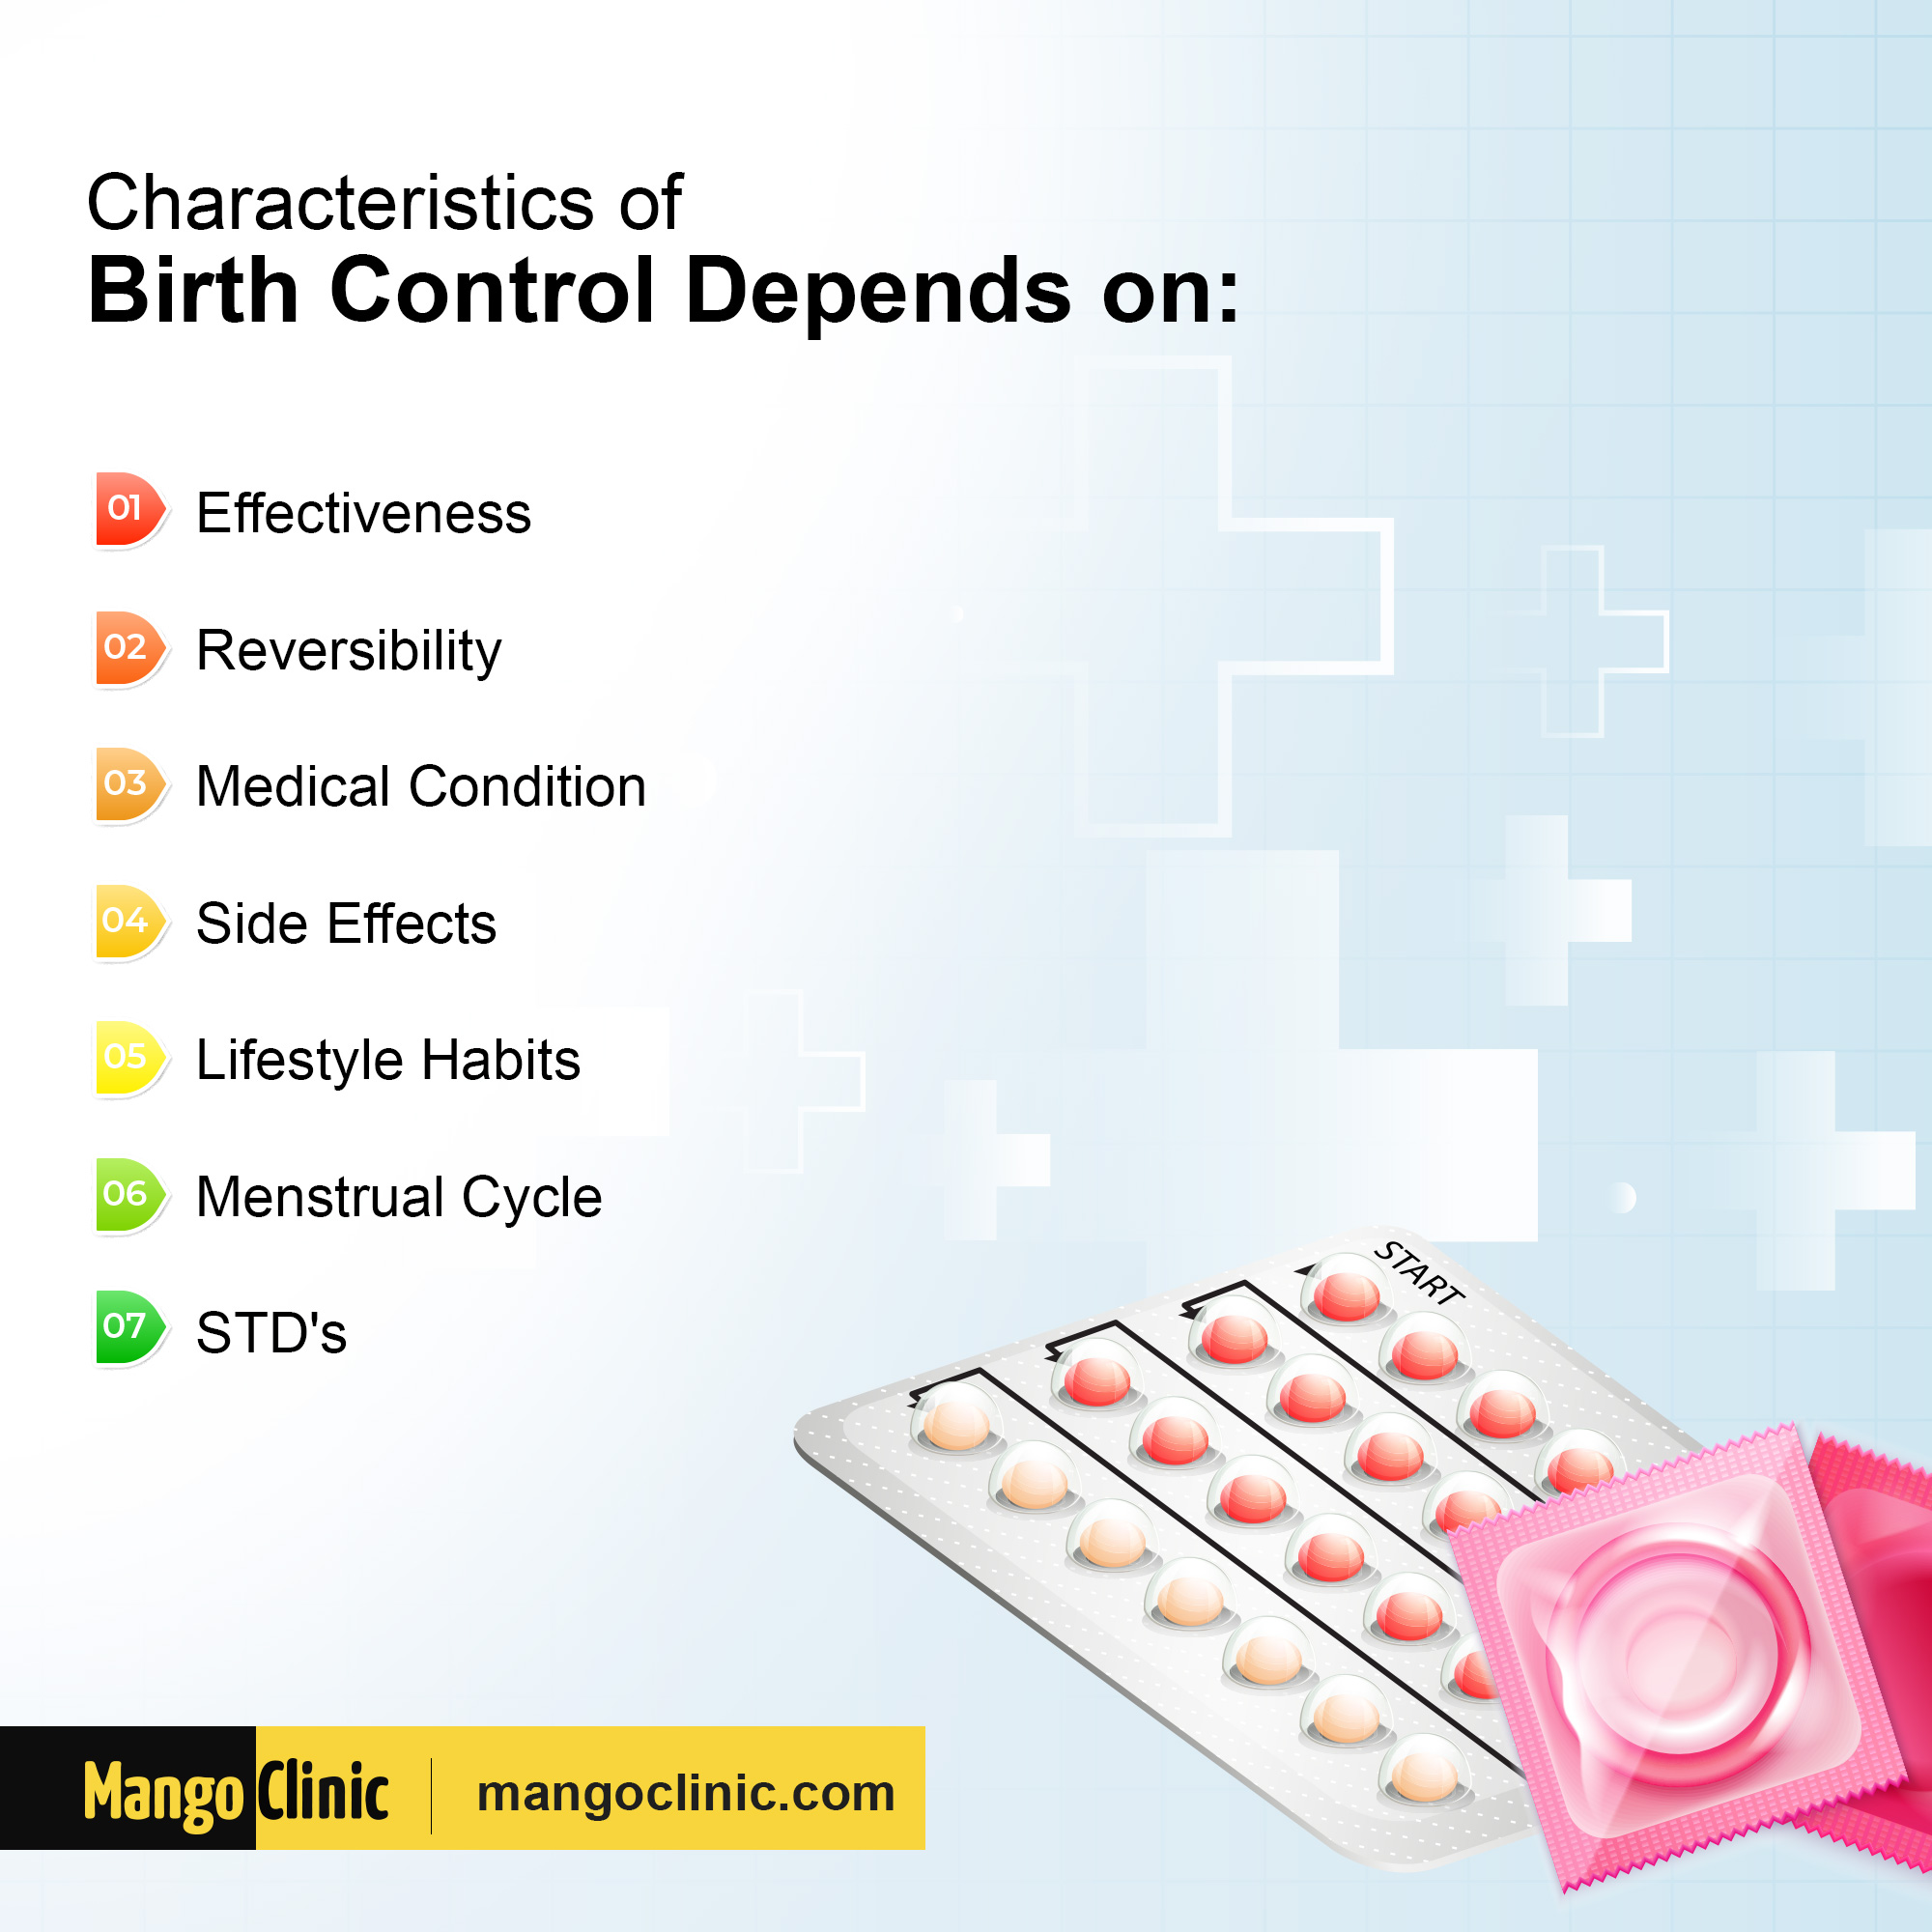 Contraceptive and Birth Control Characteristics